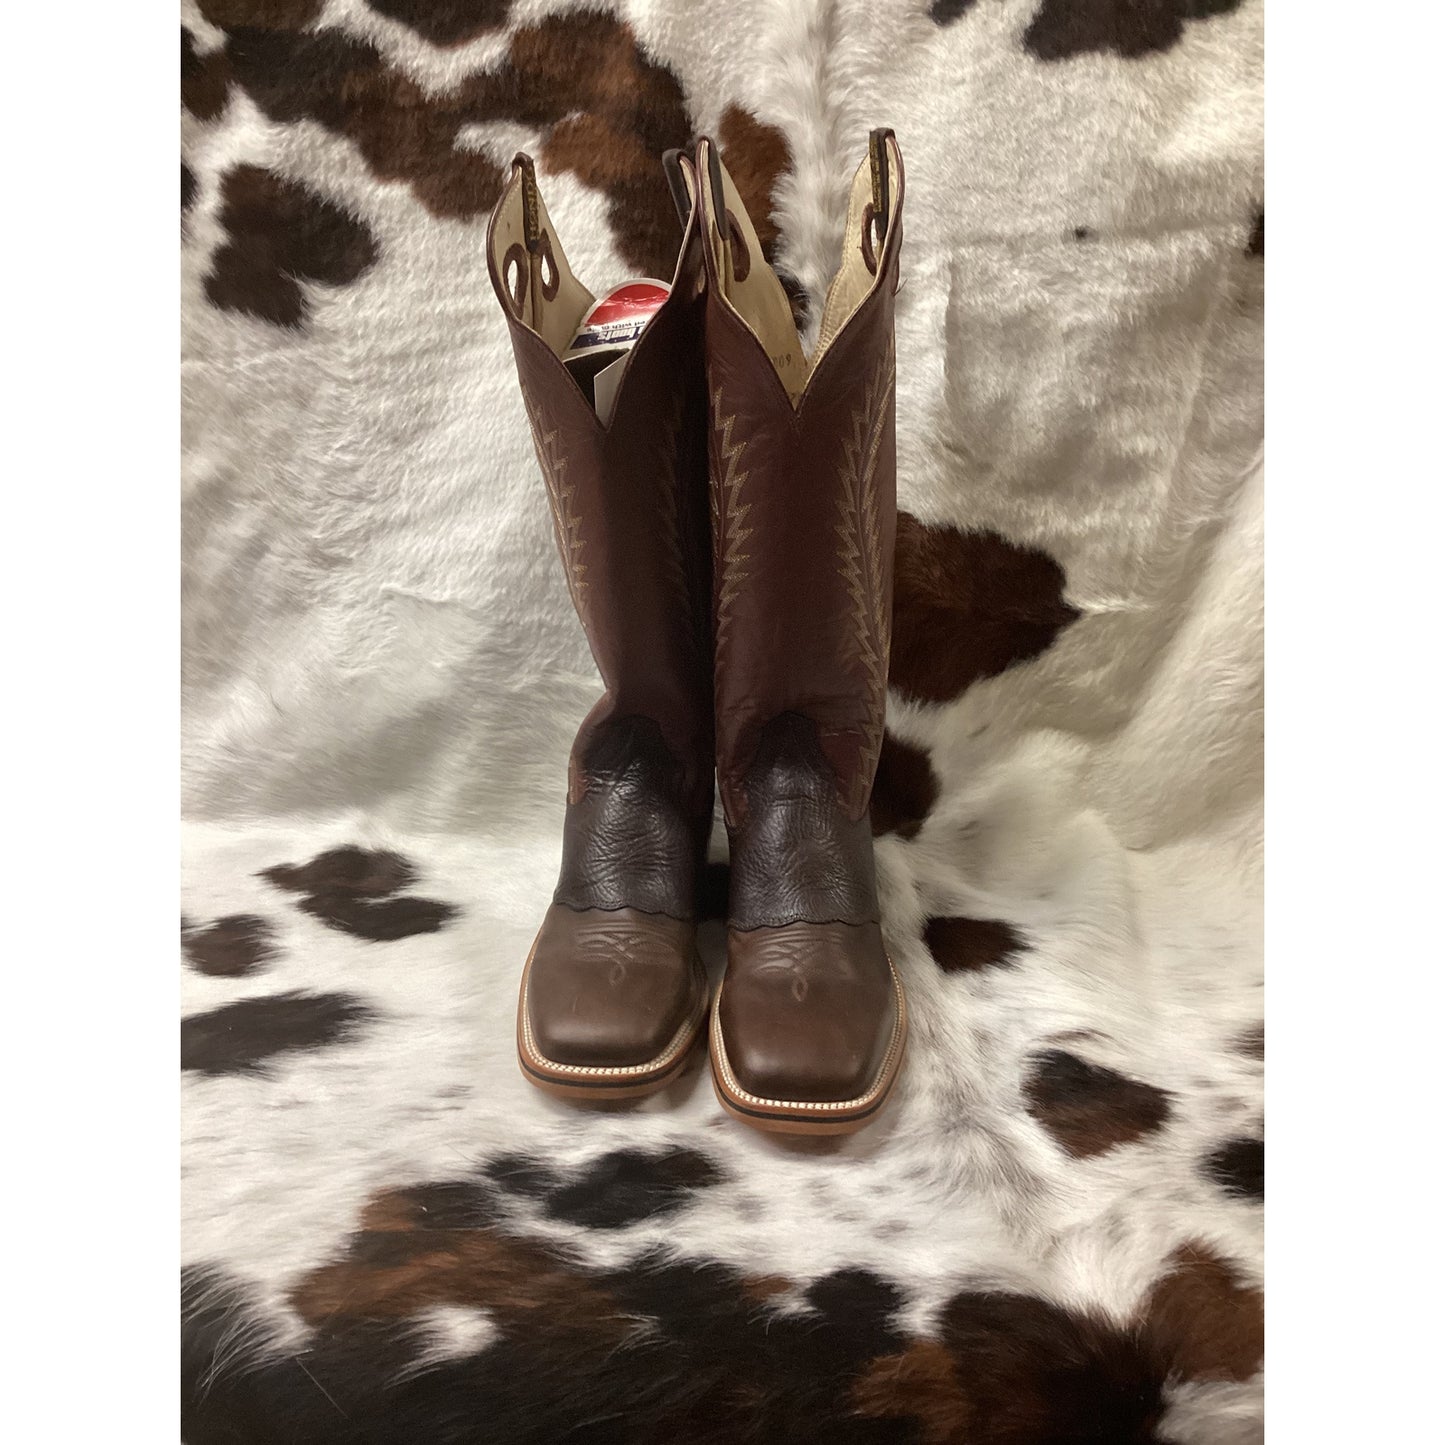 Hondo Men’s Cowboy Boots 2012X Crazy Brown